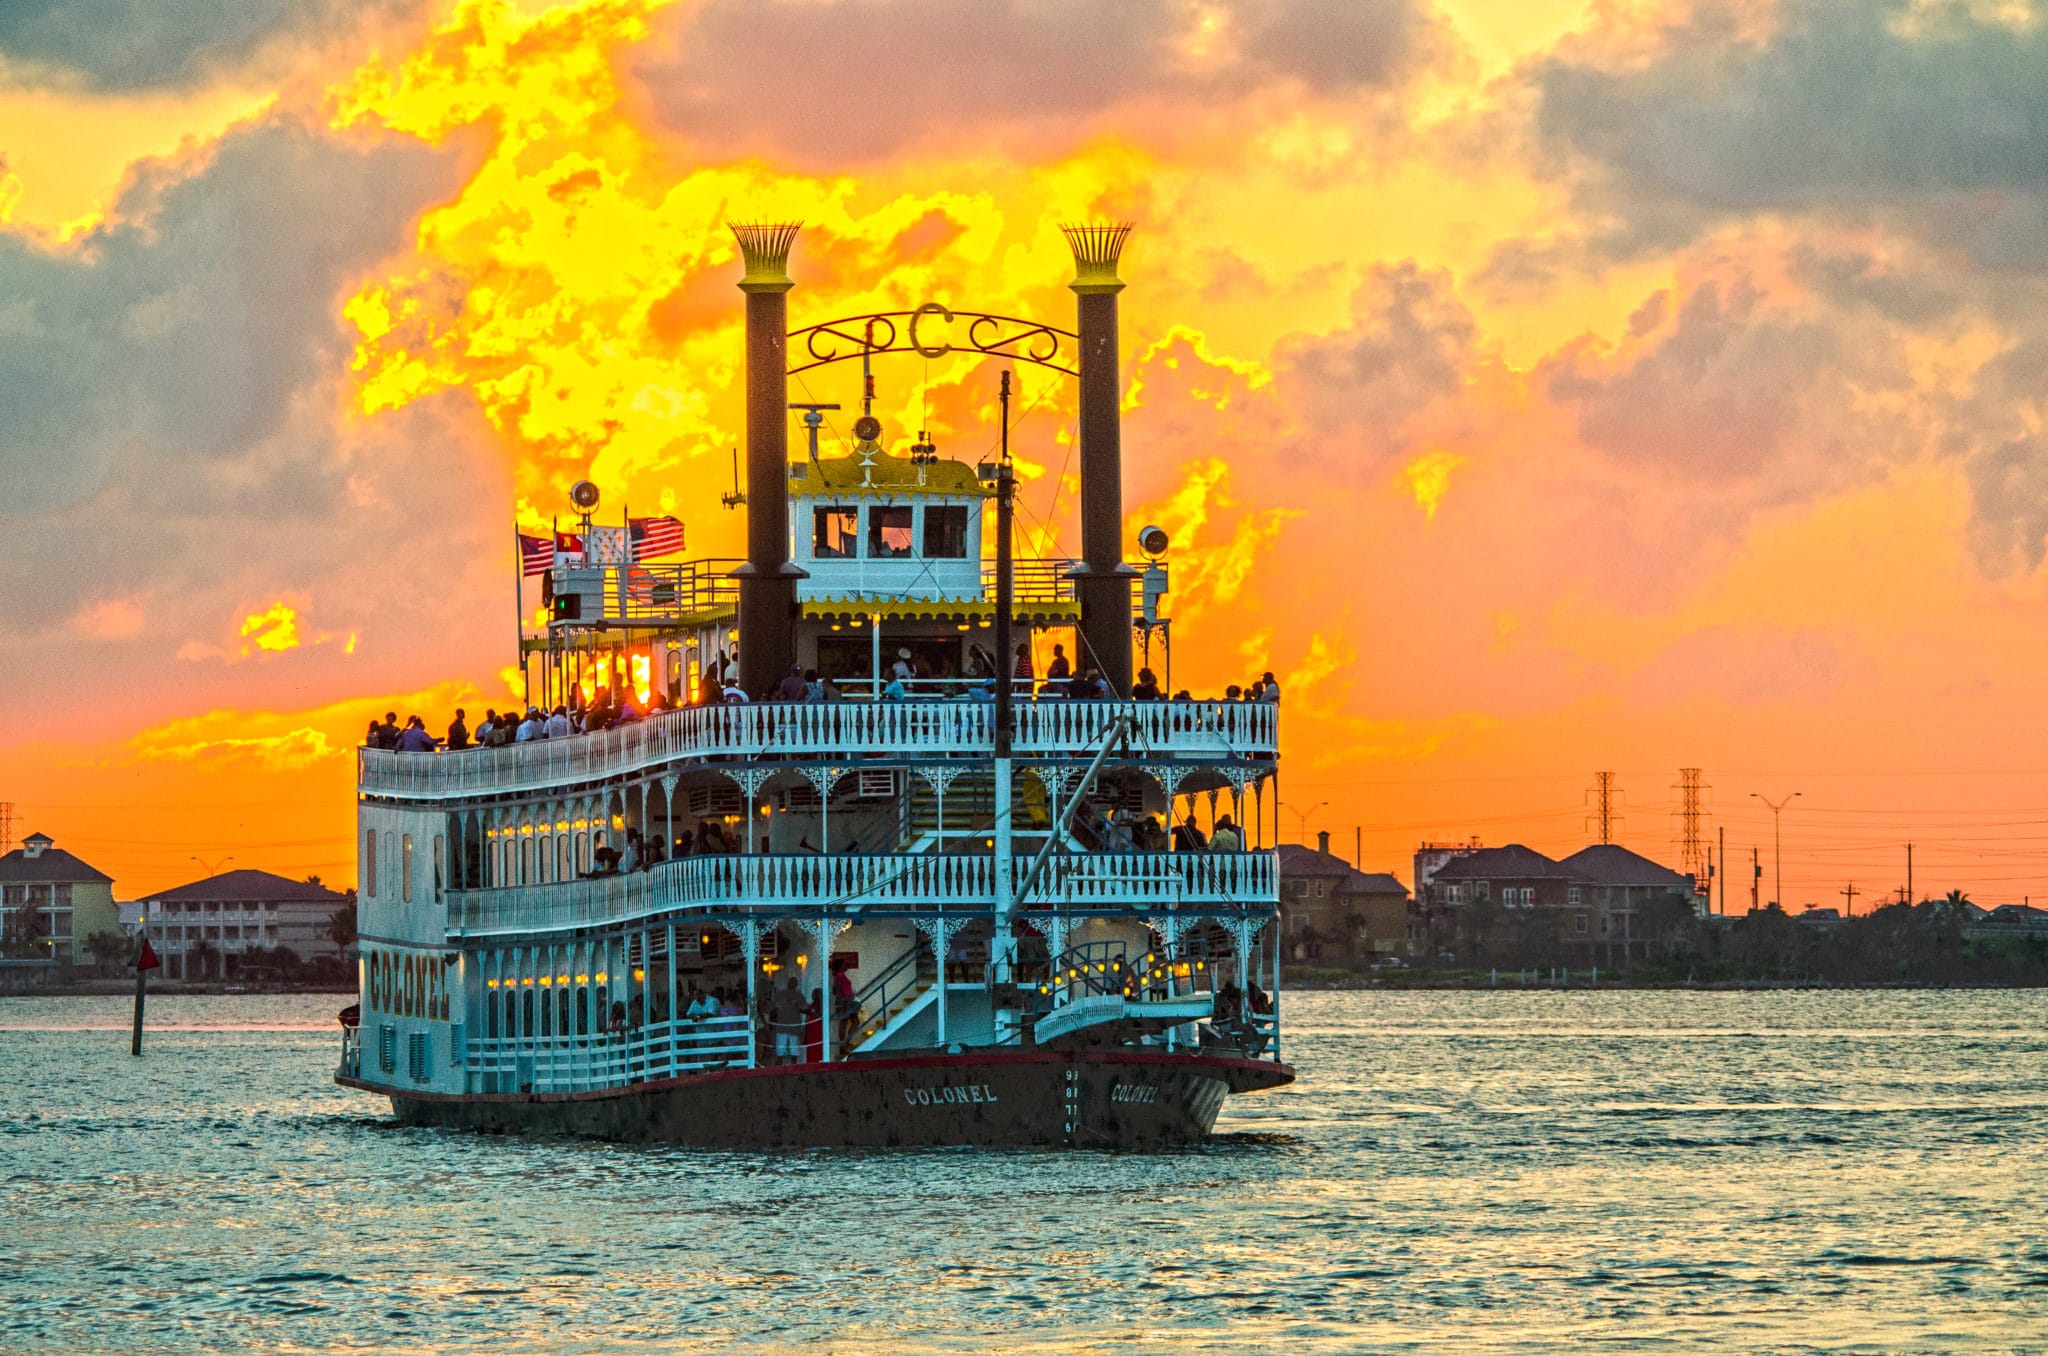 3-Day Tour of Galveston Harbor